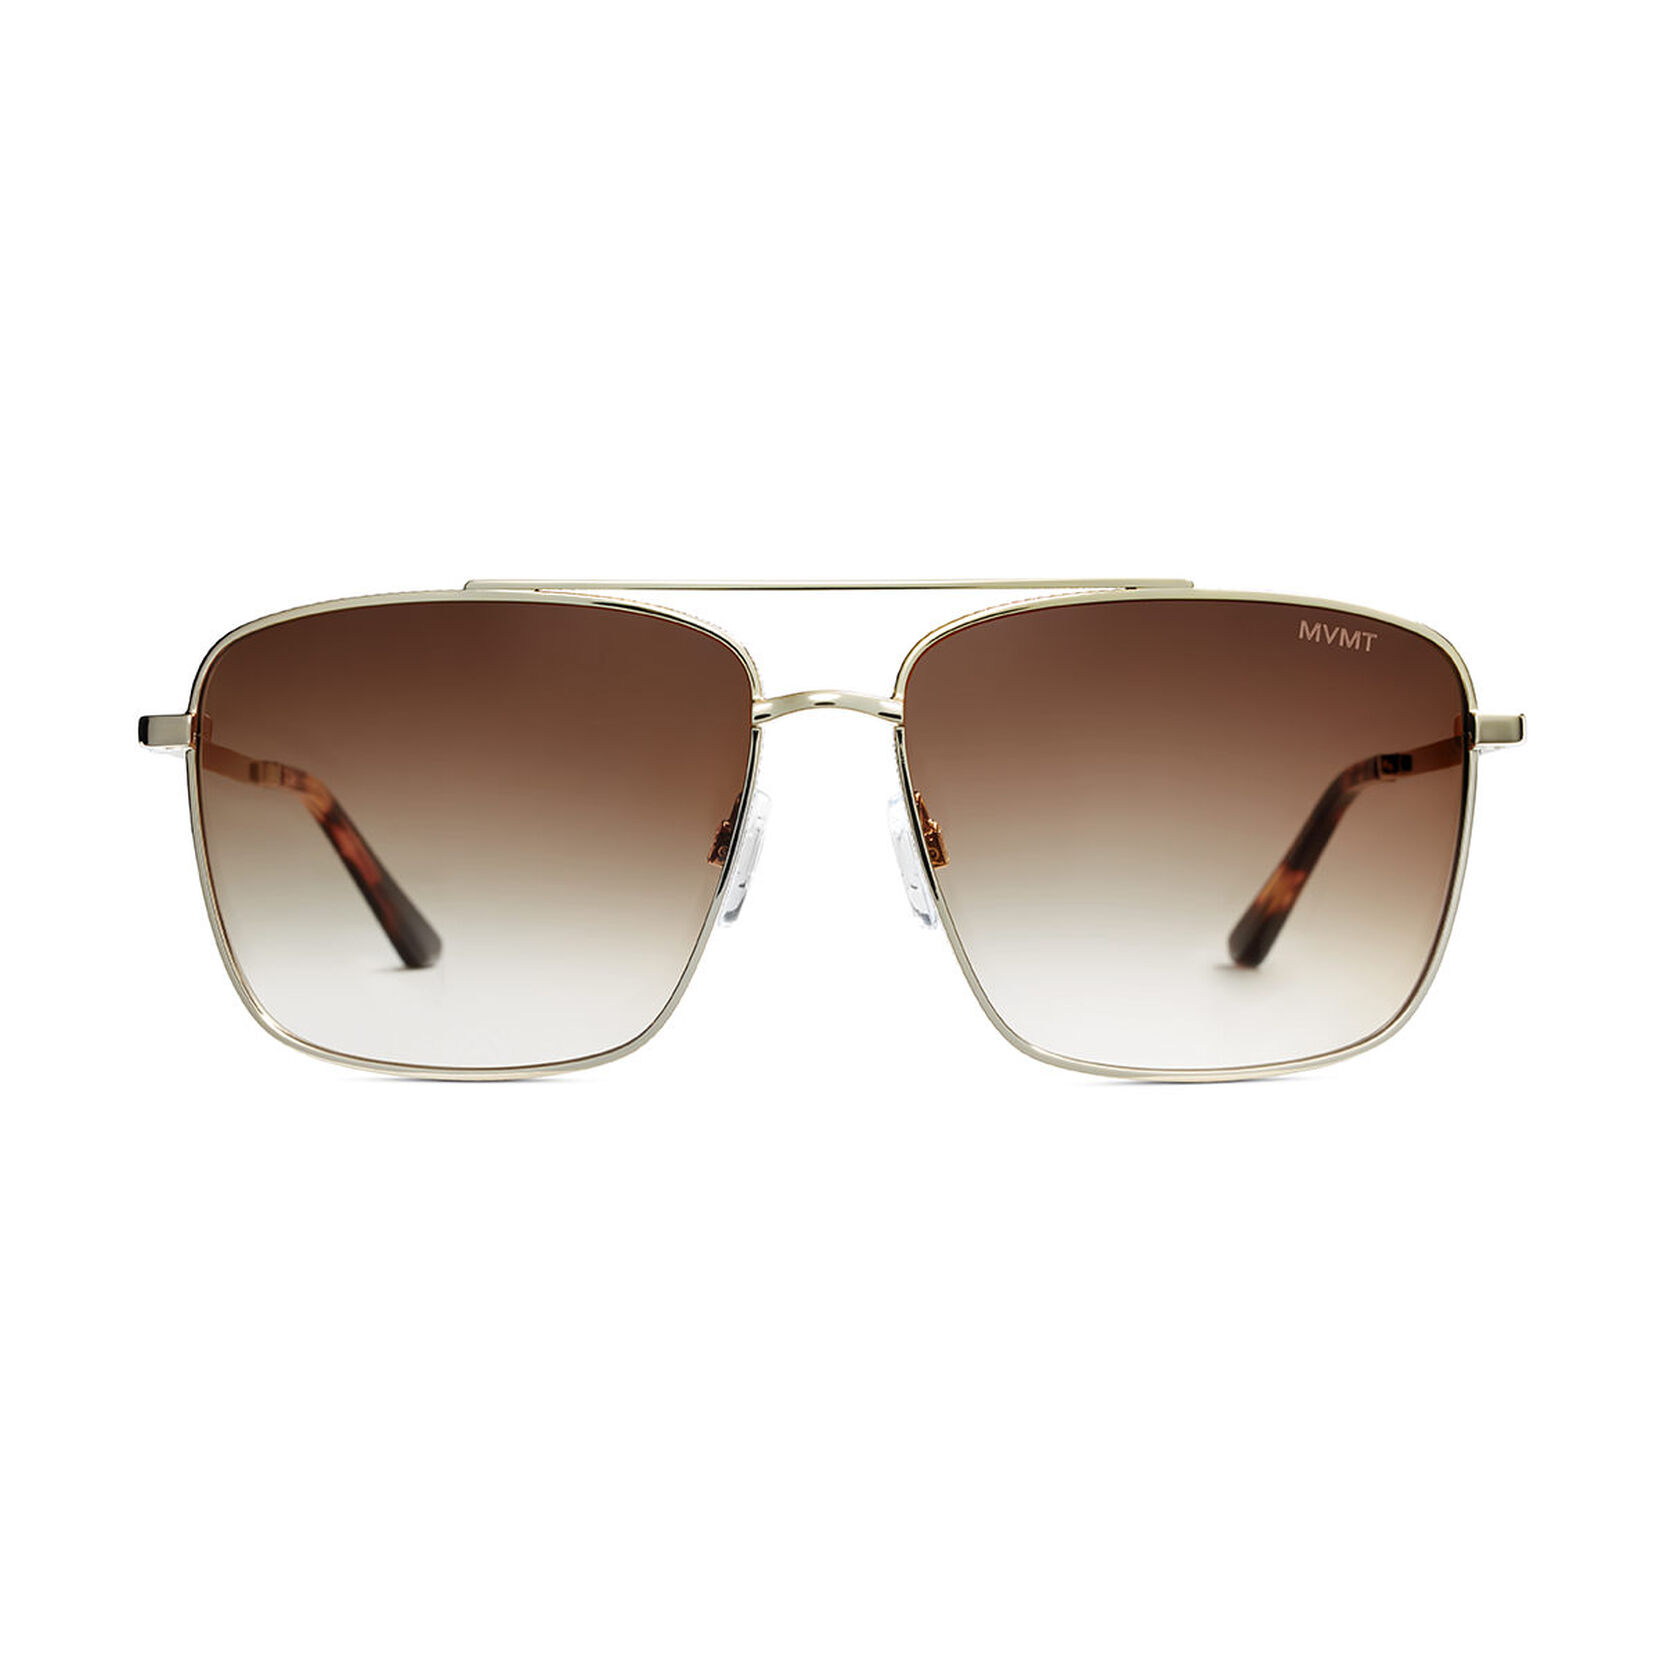 MVMT Navigator Non-Polarized Square Sunglasses - Stainless Steel Sunglasses  for Men & Women - Cruiser Shades Block 100% of UV Rays - Premium, Durable